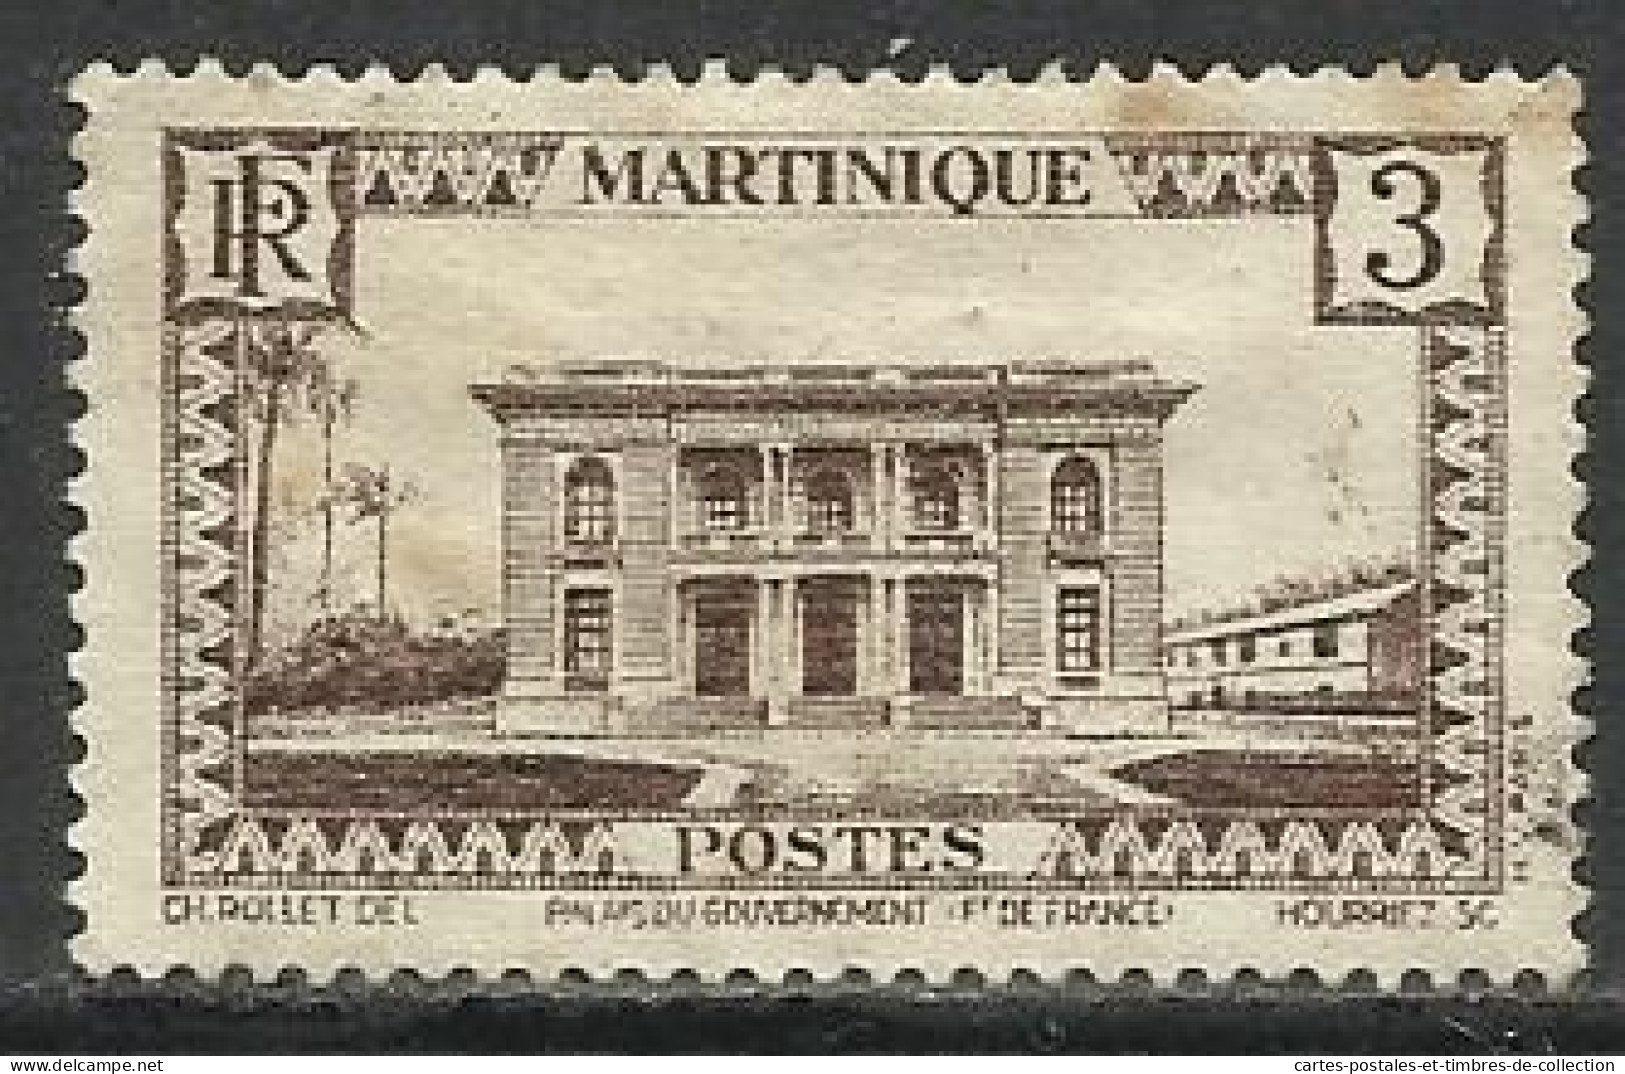 MARTINIQUE , Lot de 12 timbres , 1908 - 1947 , voir scans